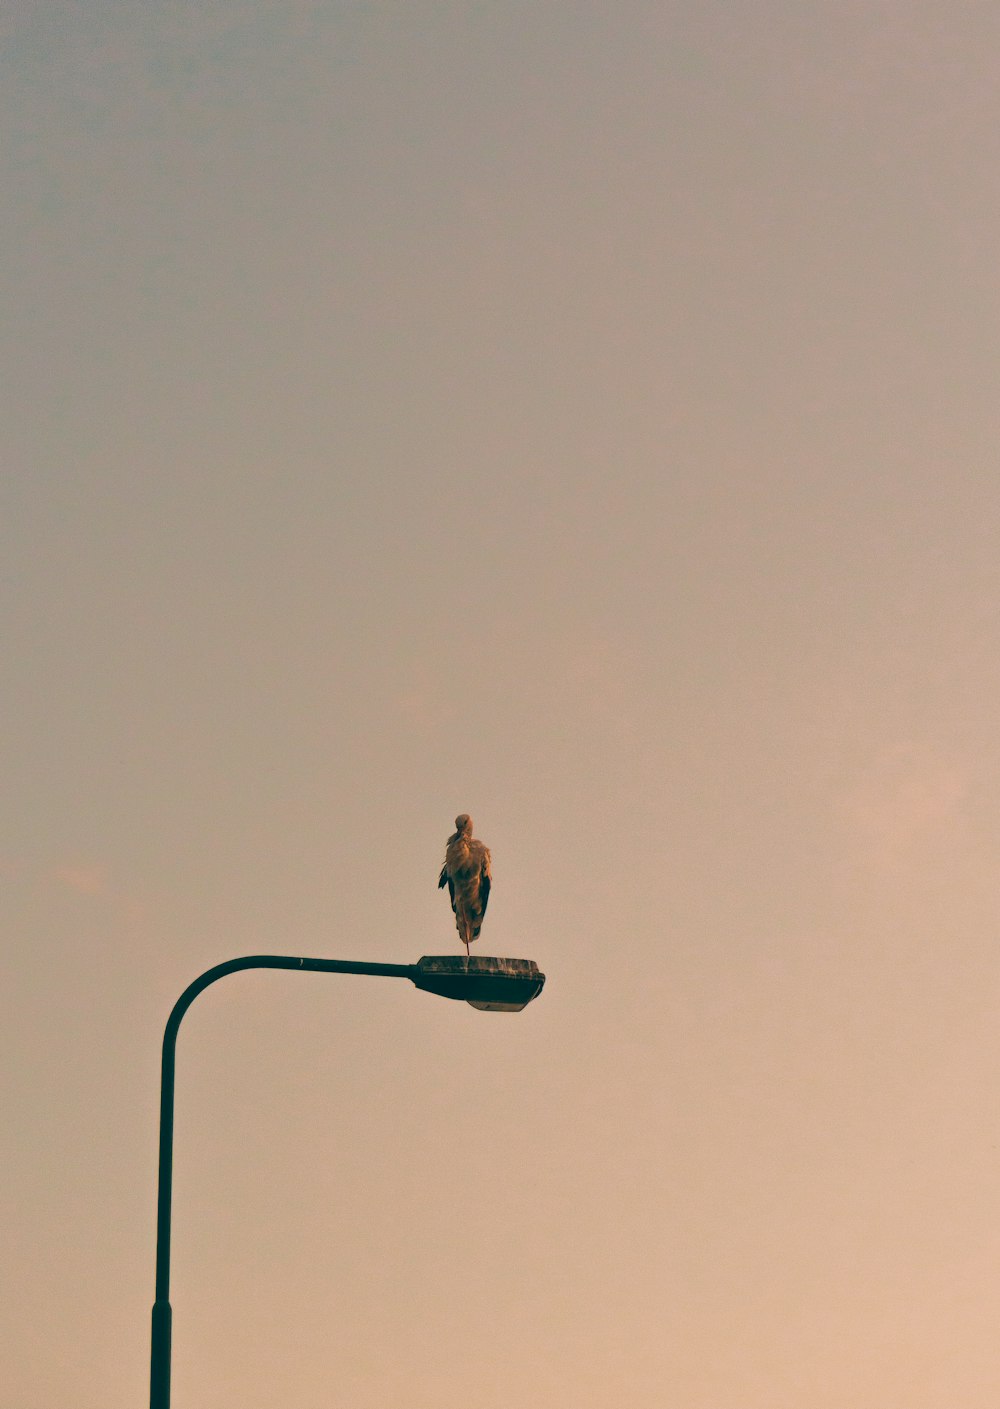 a bird sitting on top of a street light